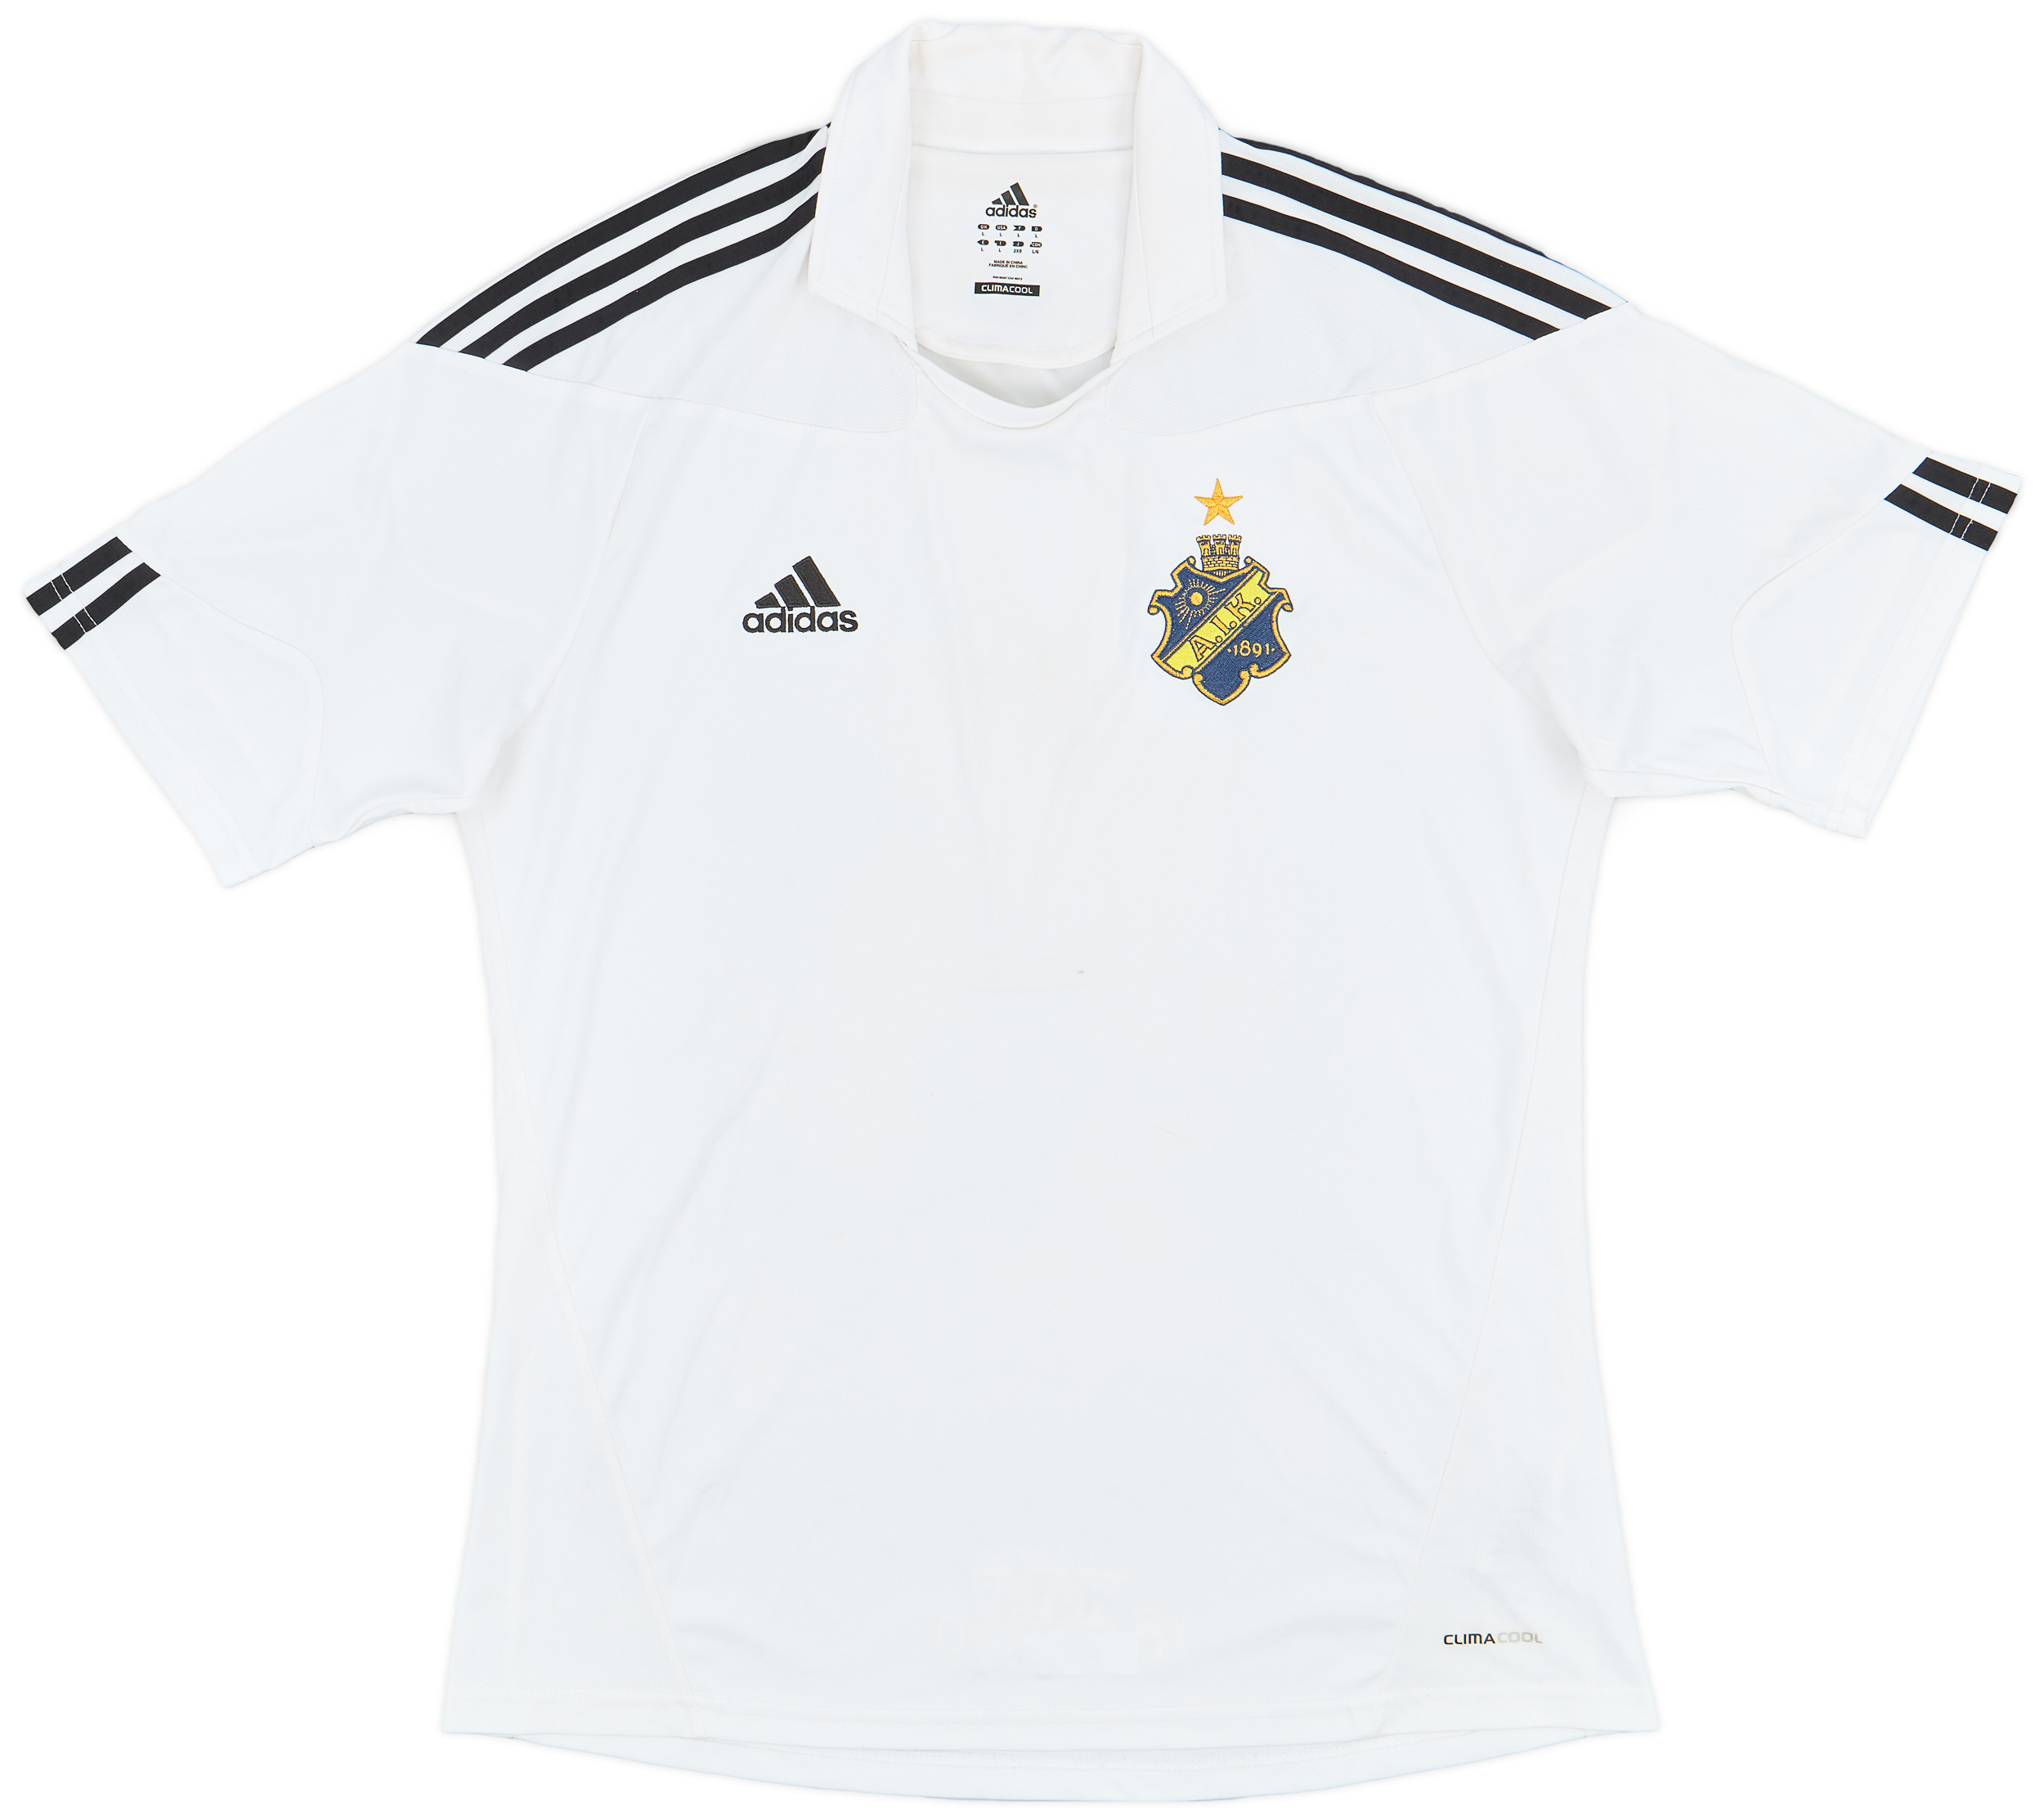 AIK Fotboll   Visitante Camiseta (Original)